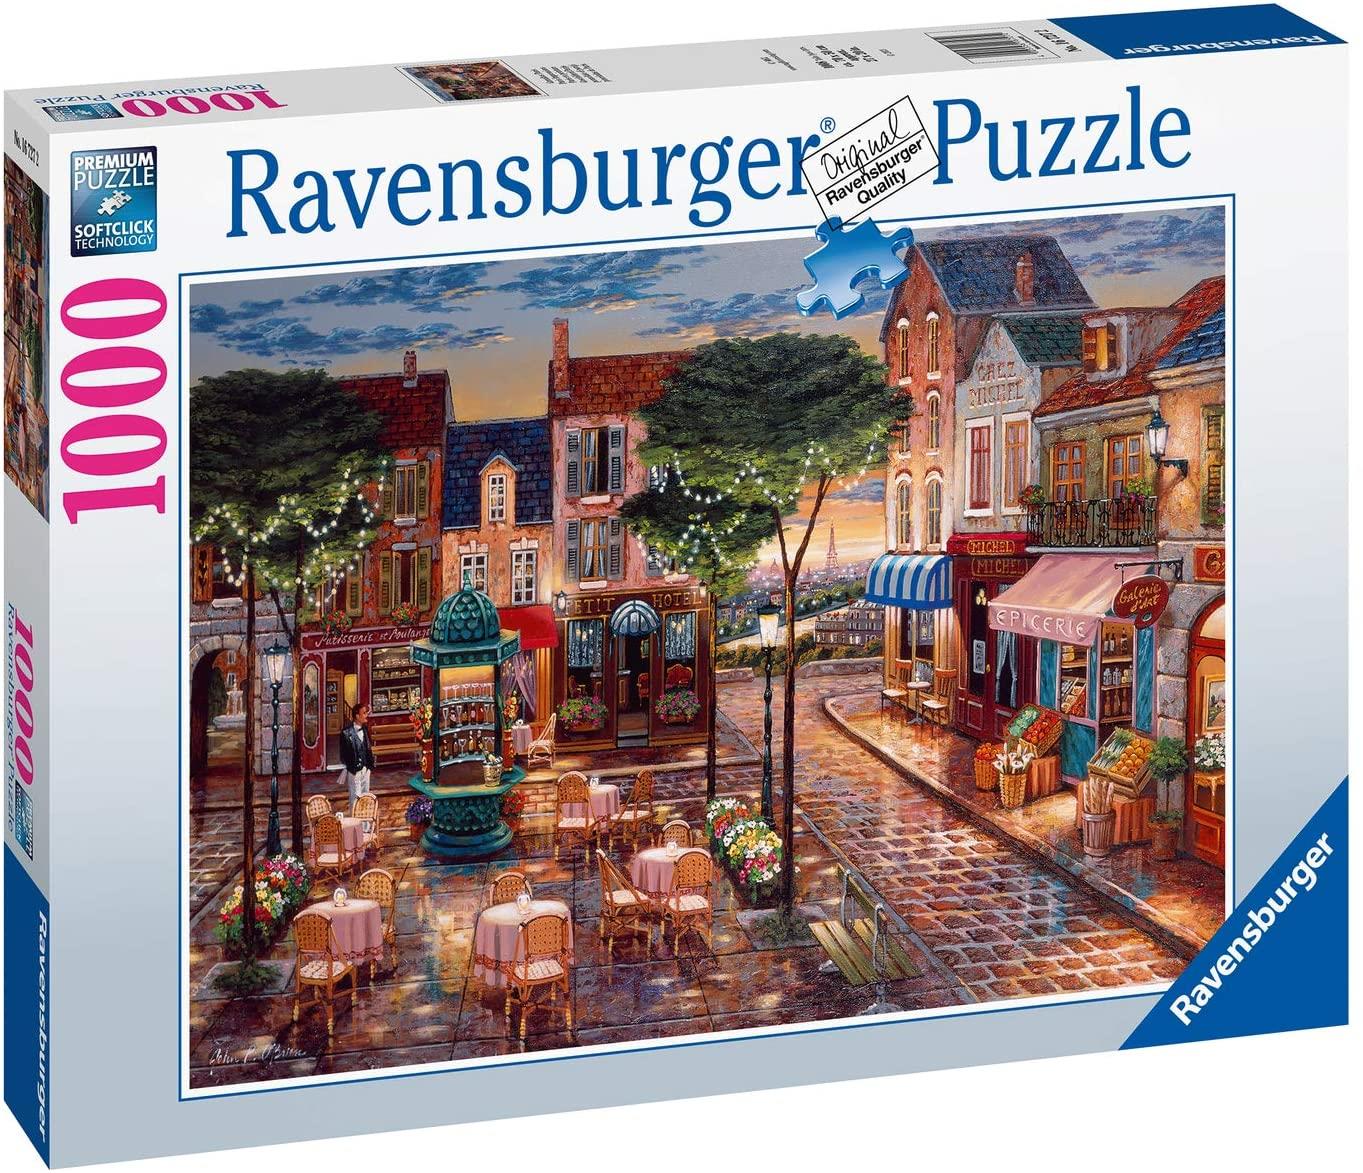 Ravensburger Paris Impressions Jigsaw Puzzle (1000 Pieces) PDK